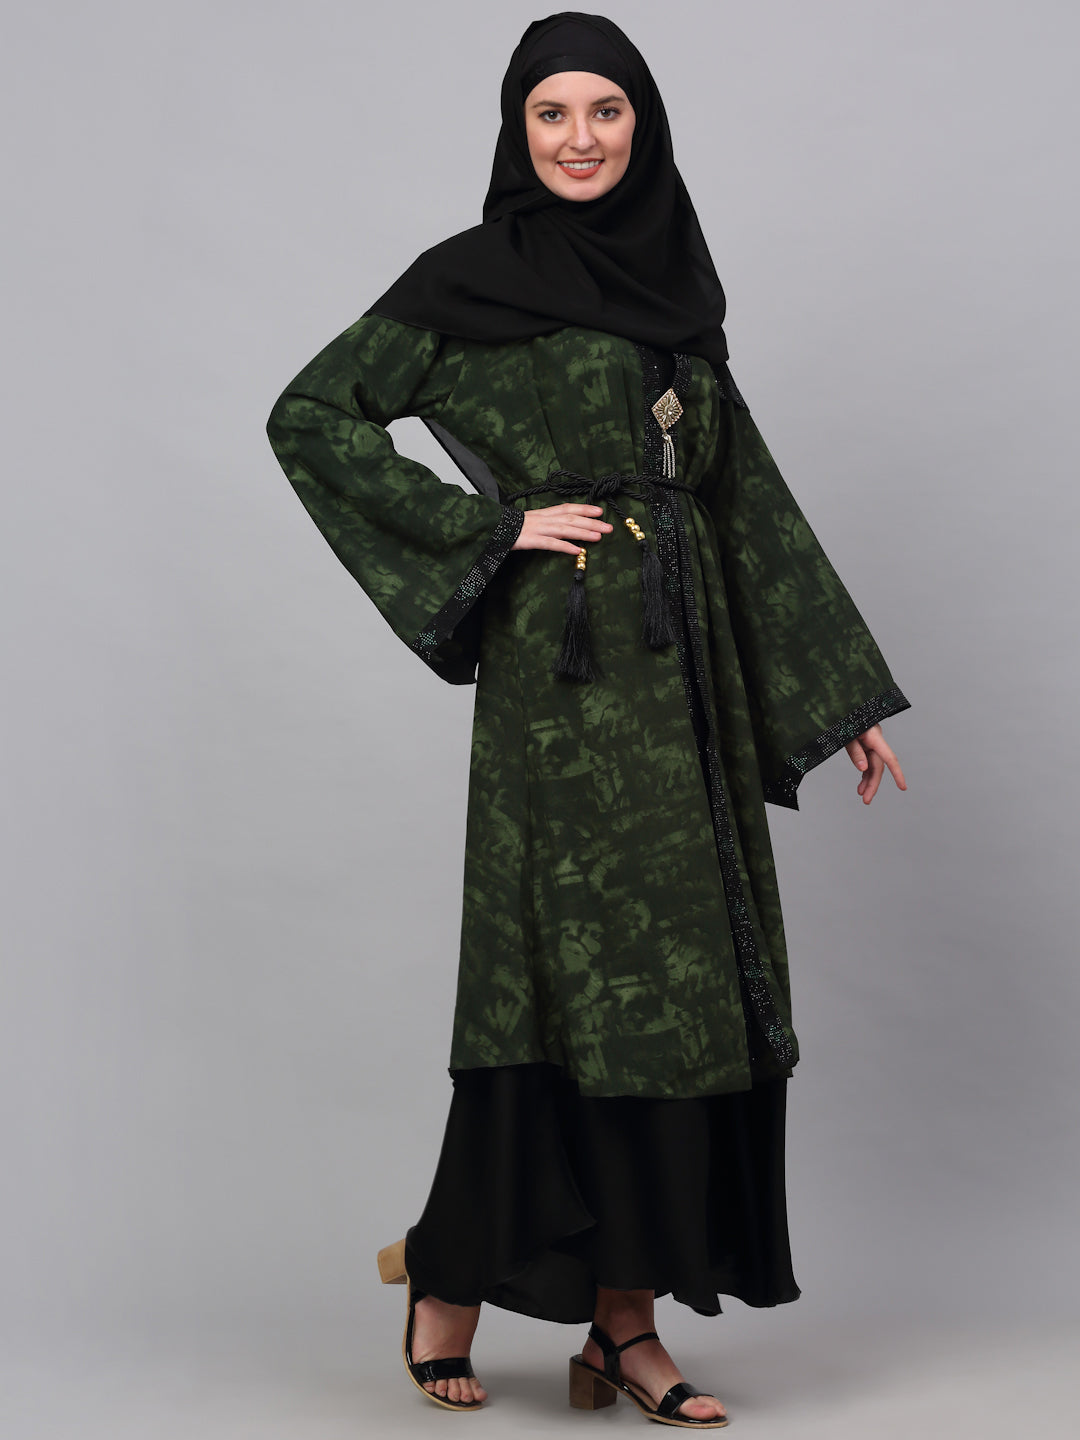 Klotthe Women Multicolor Embellished Burqa With Scarves